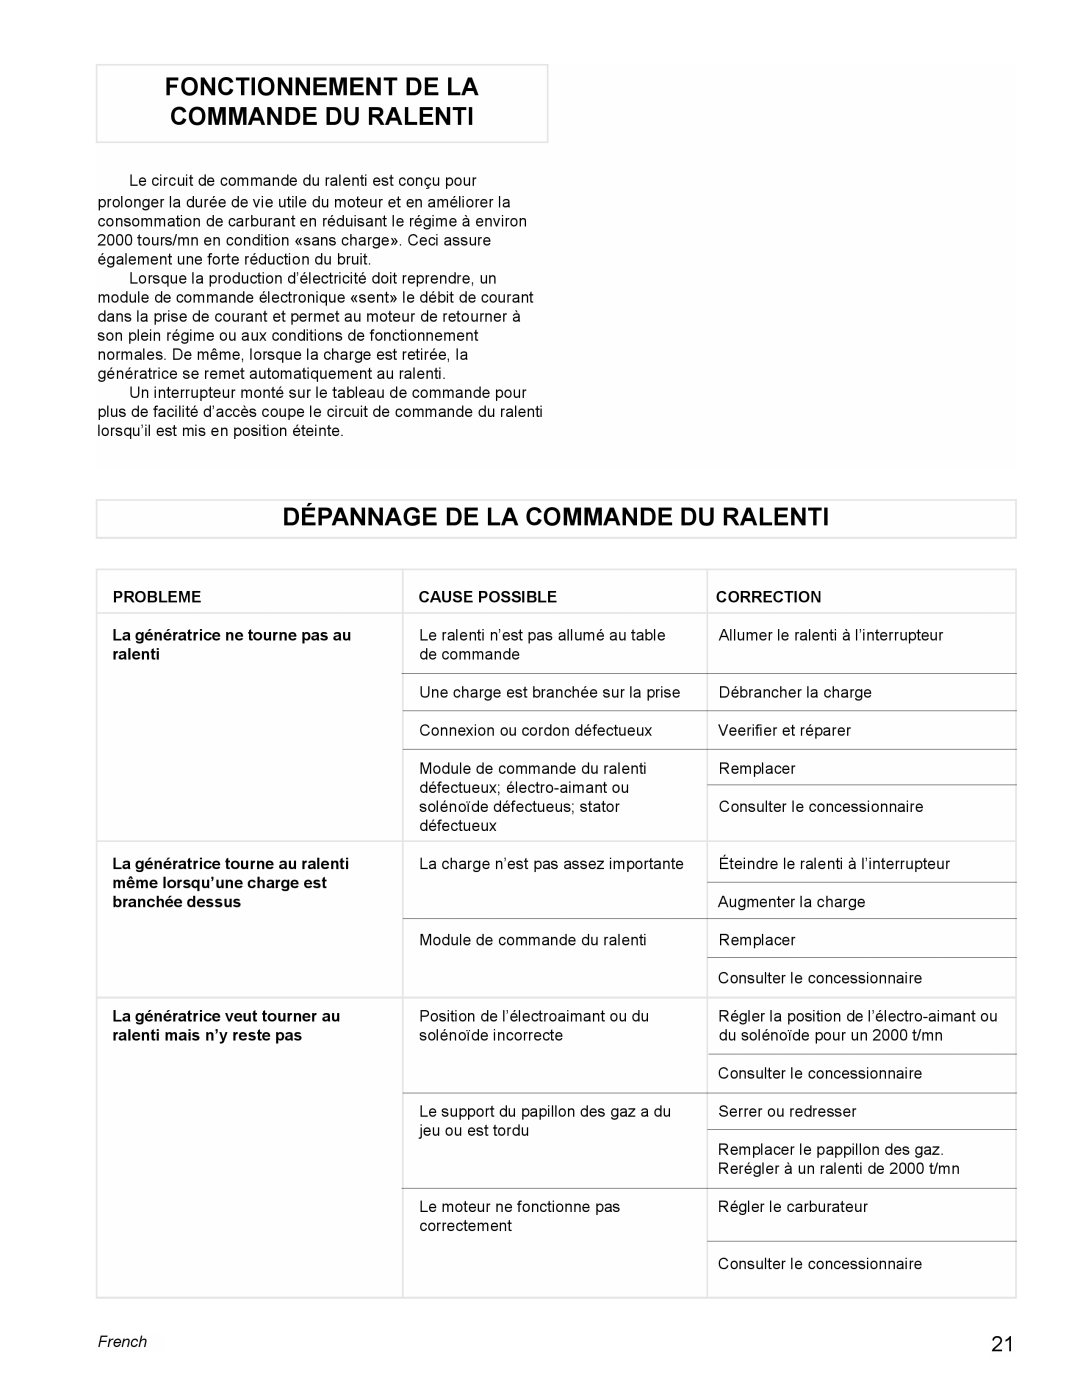 Powermate PM0478022, PL0473503 manual Fonctionnement De La Commande Du Ralenti, Dépannage De La Commande Du Ralenti, French 